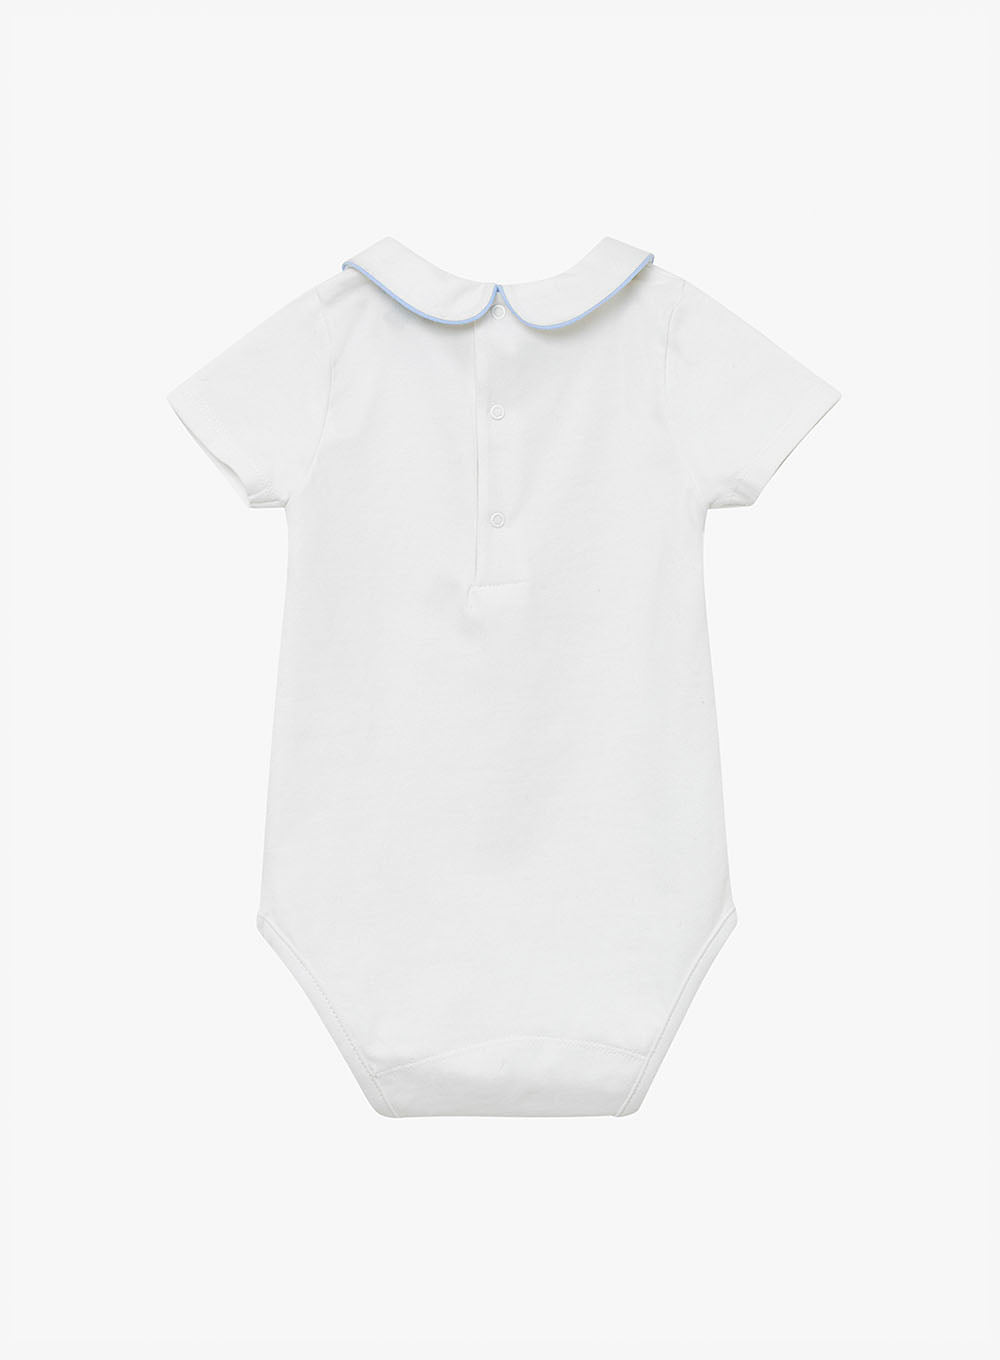 Little Short-Sleeved Milo Bodysuit in White/Blue